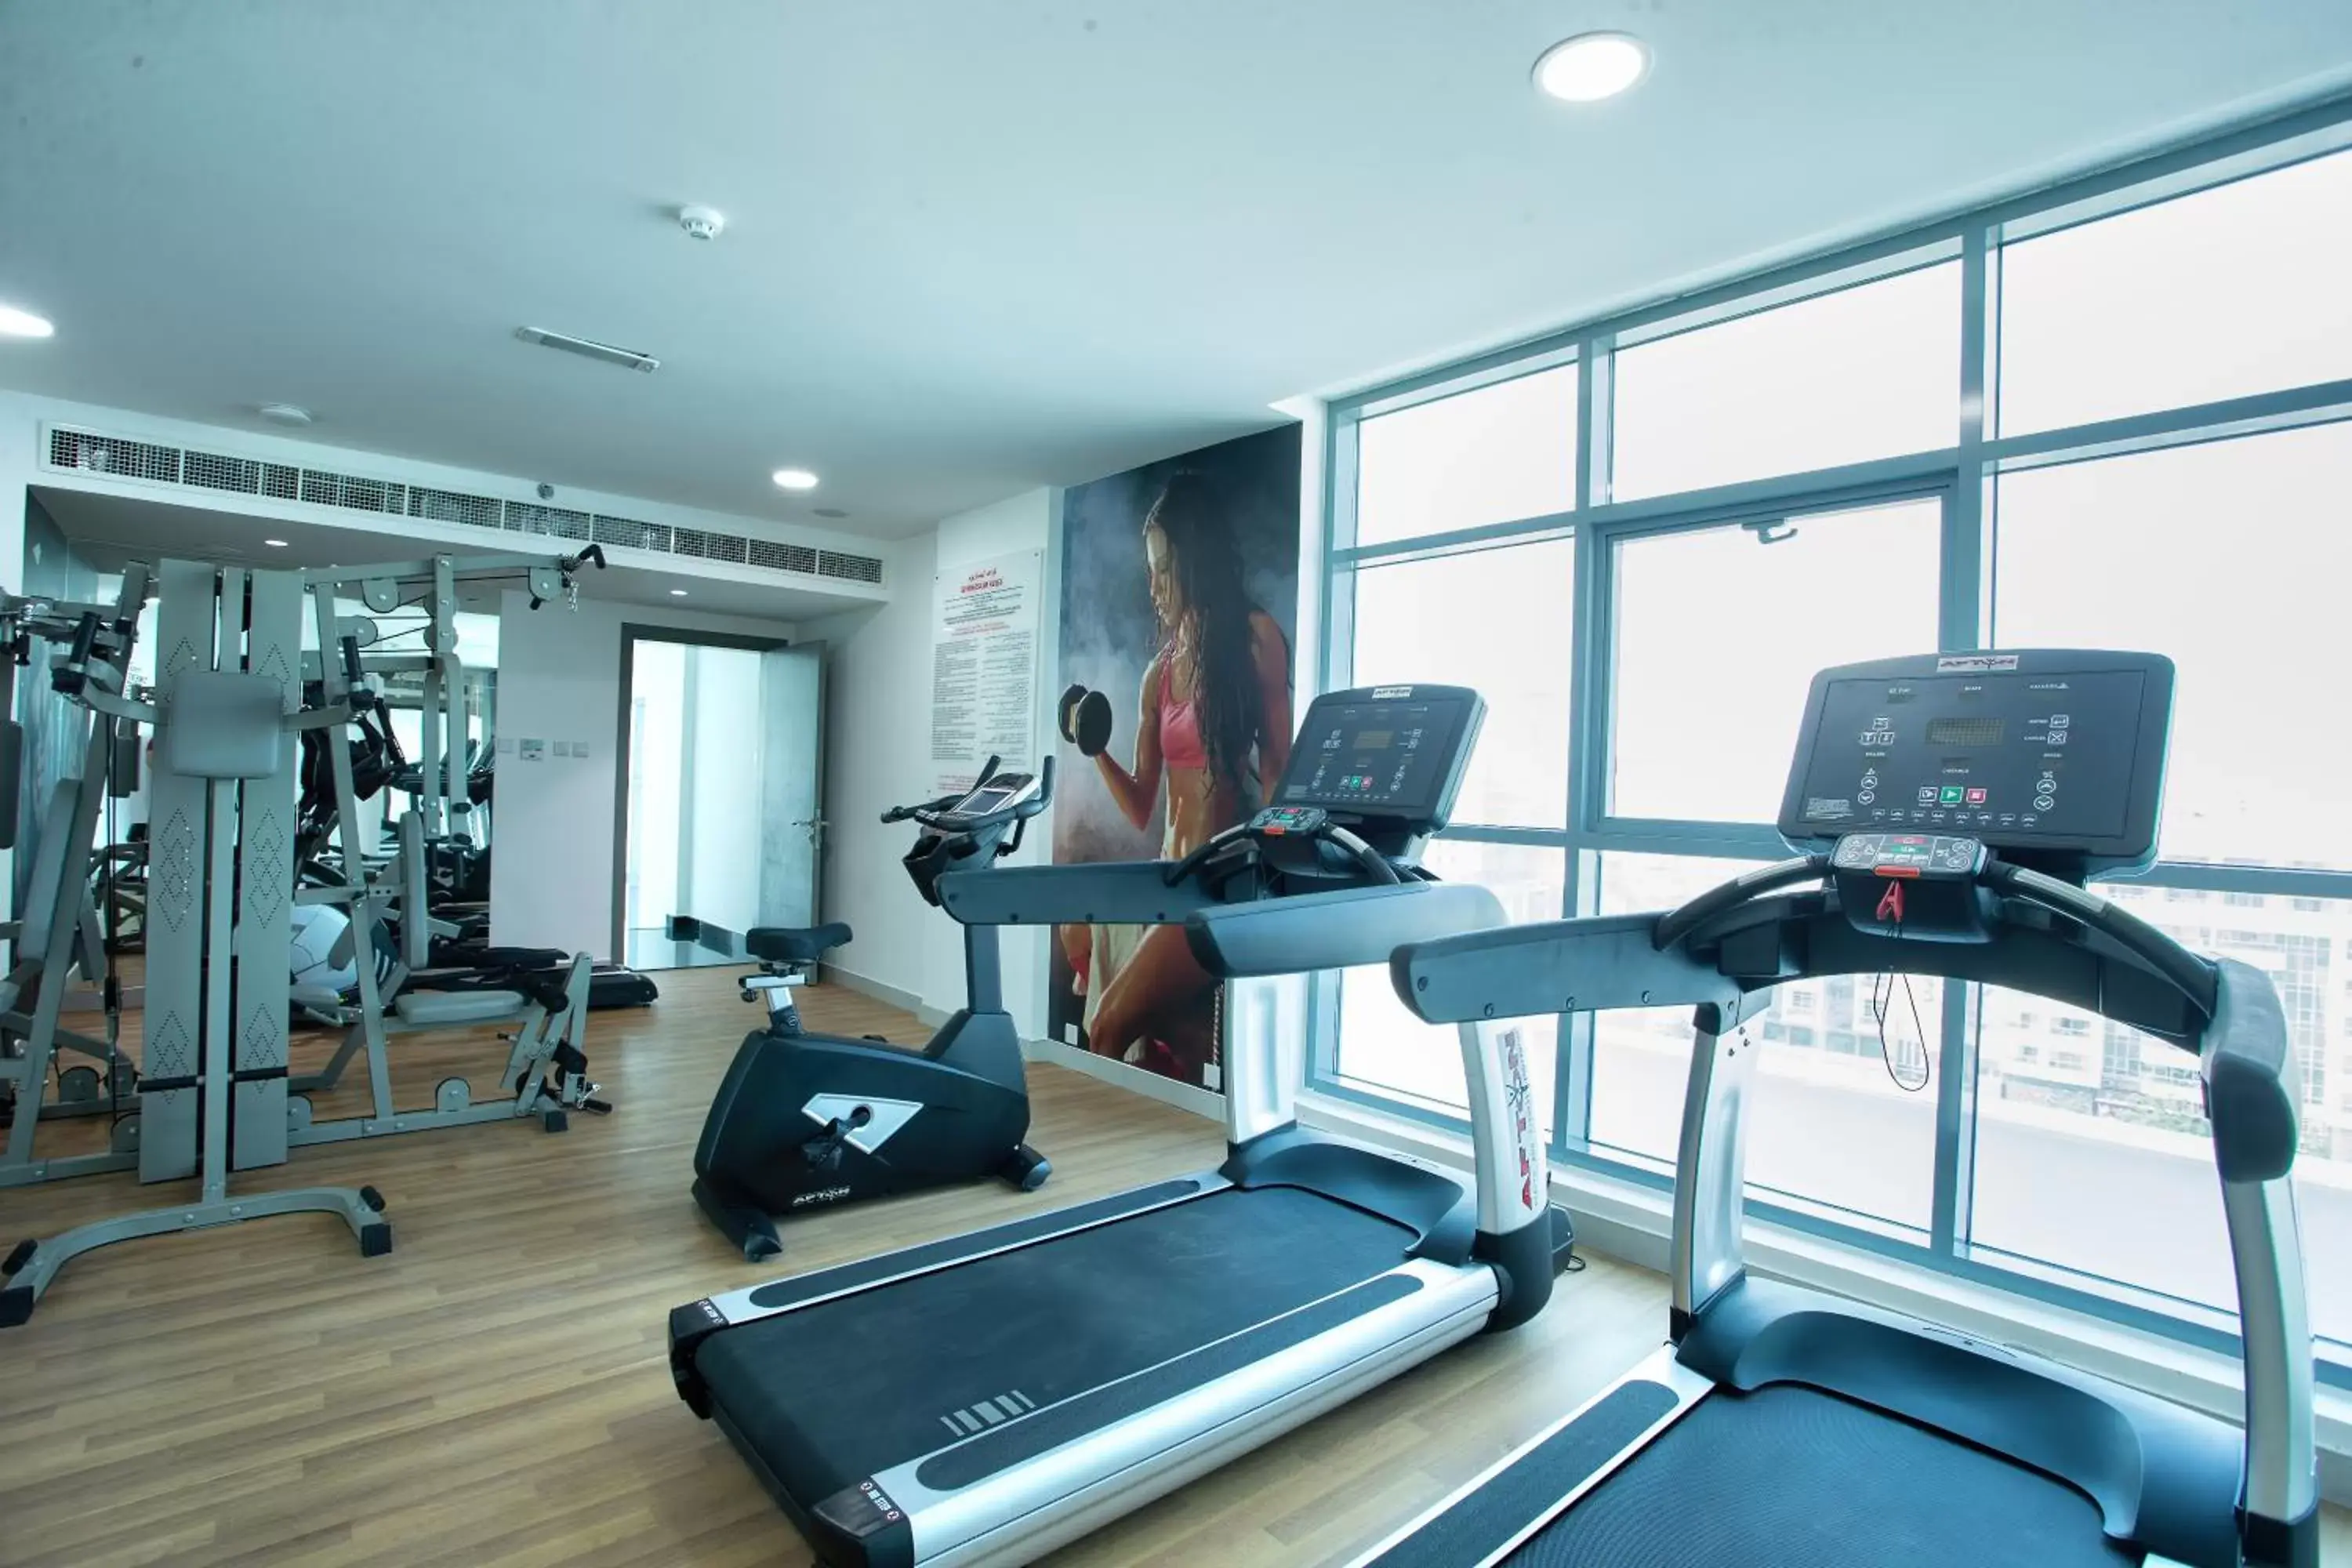 Fitness centre/facilities, Fitness Center/Facilities in City Avenue Al Reqqa Hotel